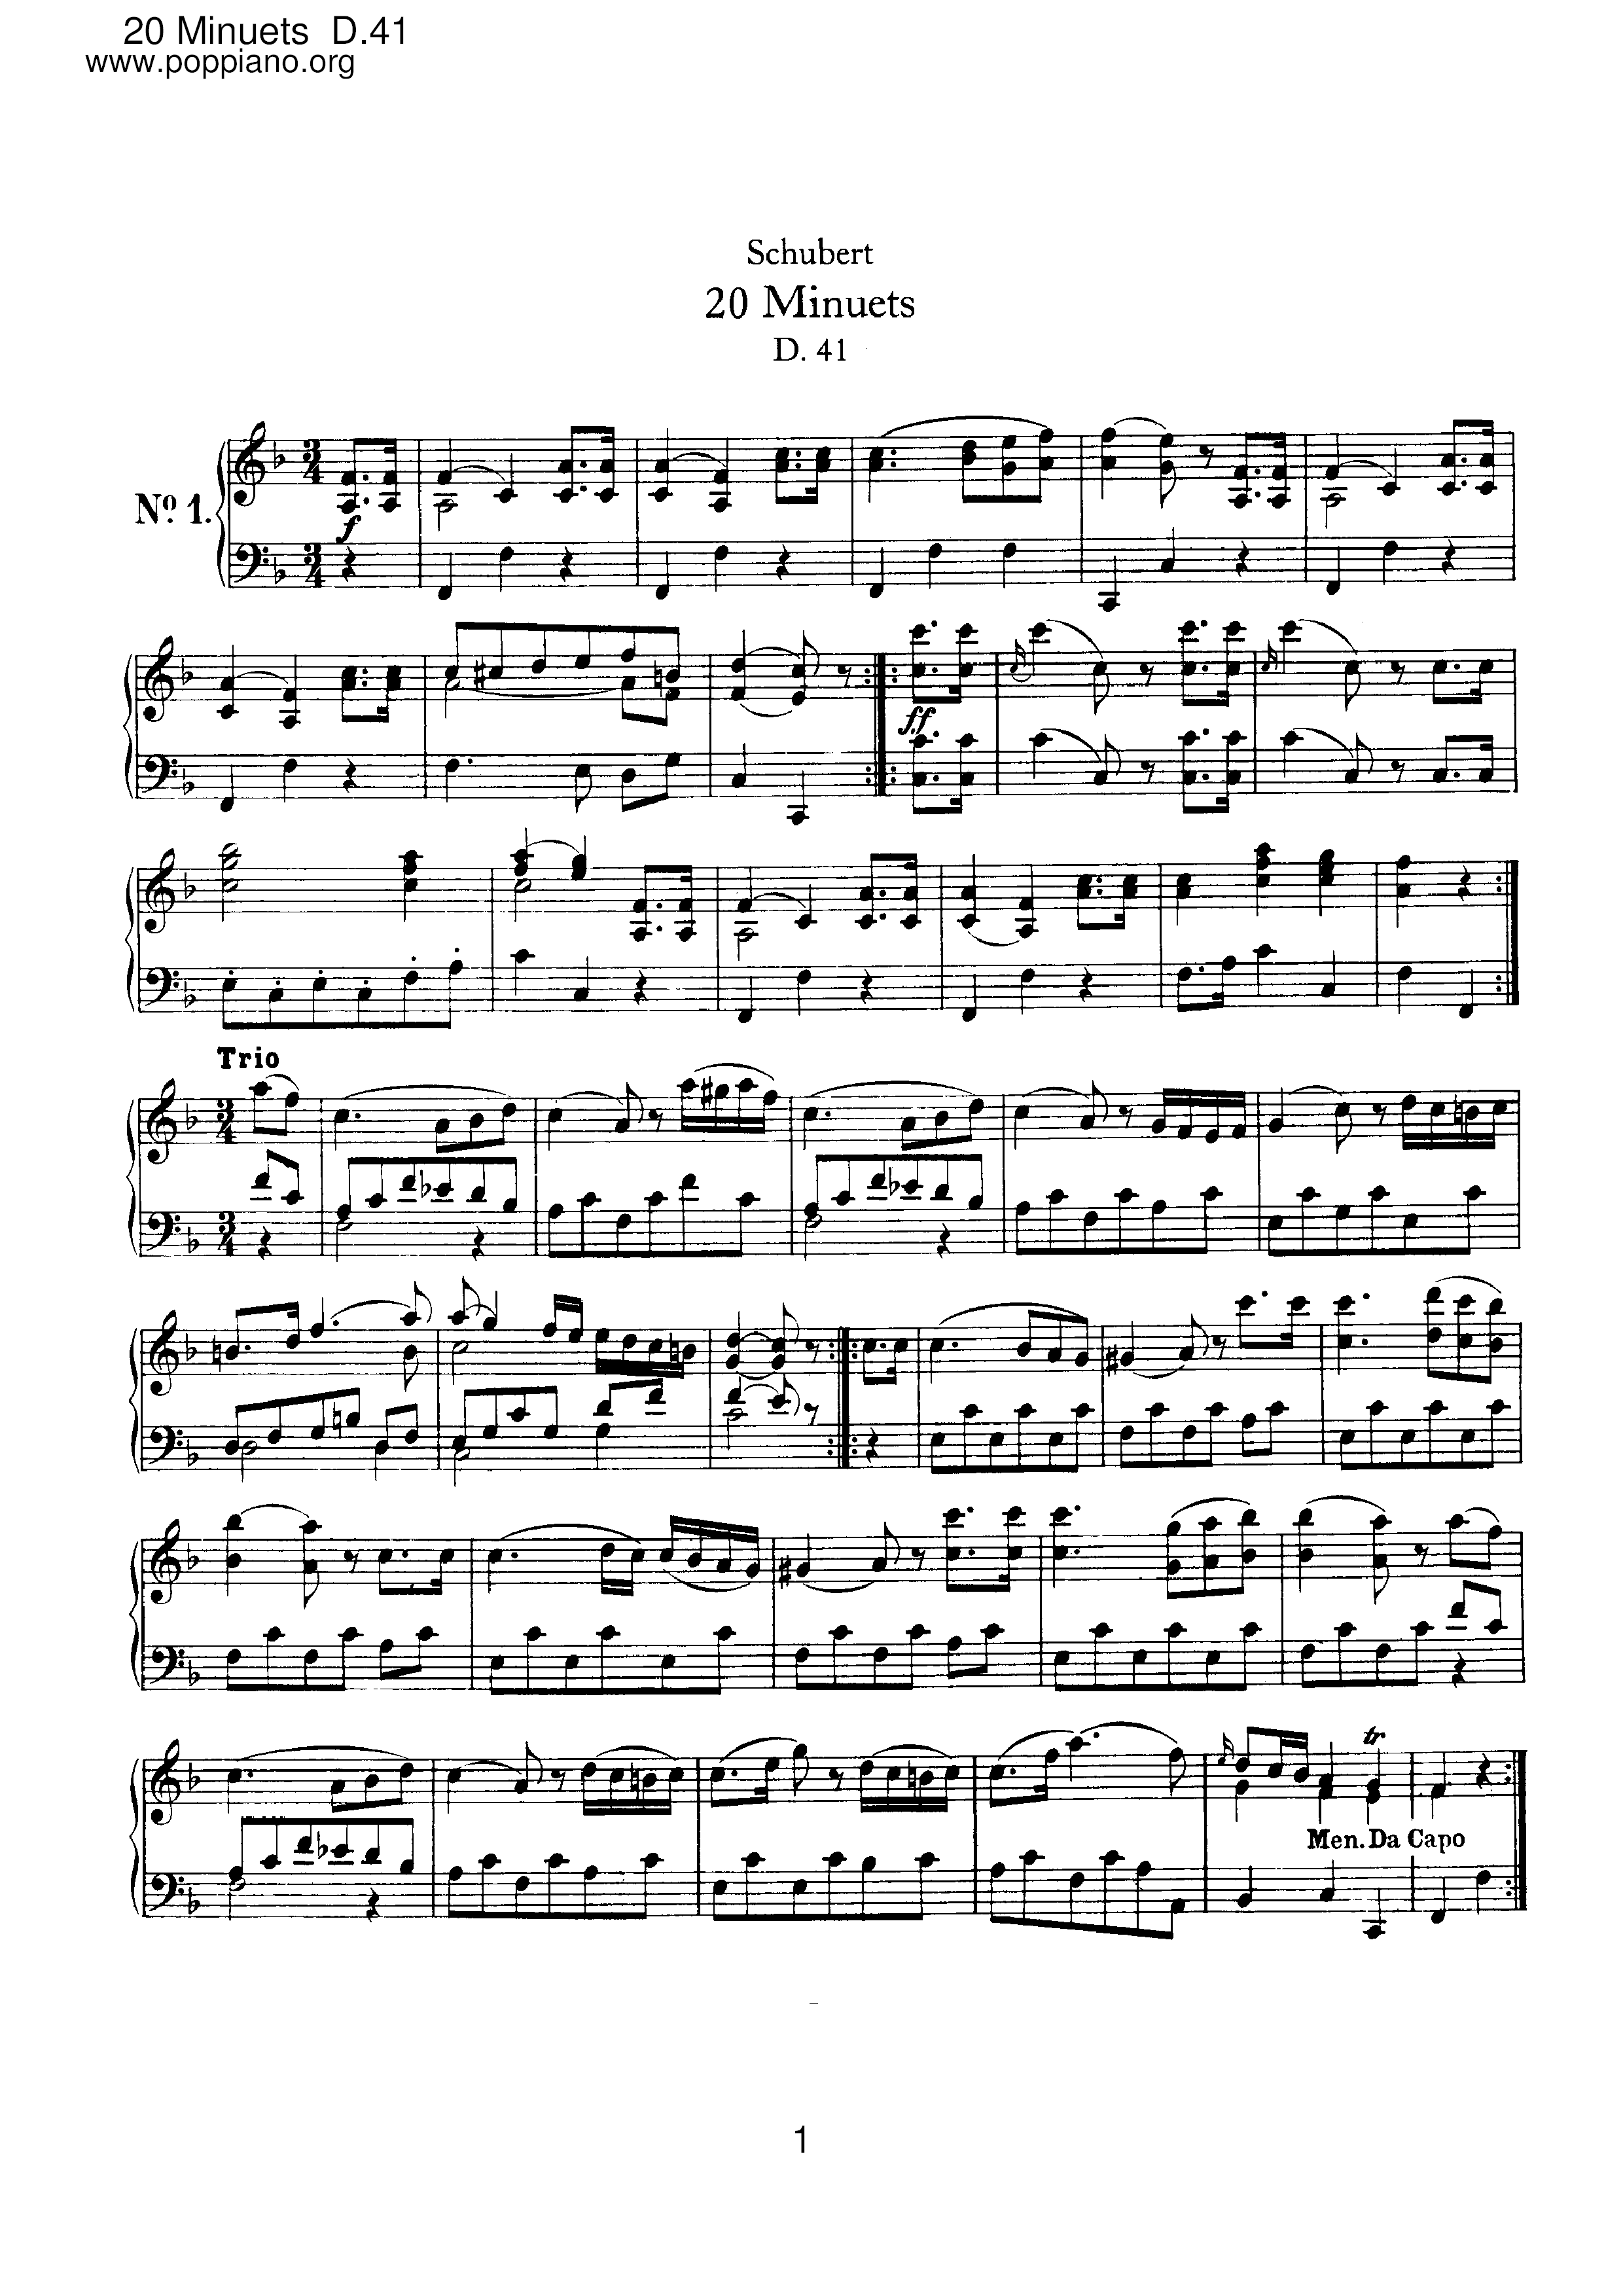 20 Minuets, D.41 Score